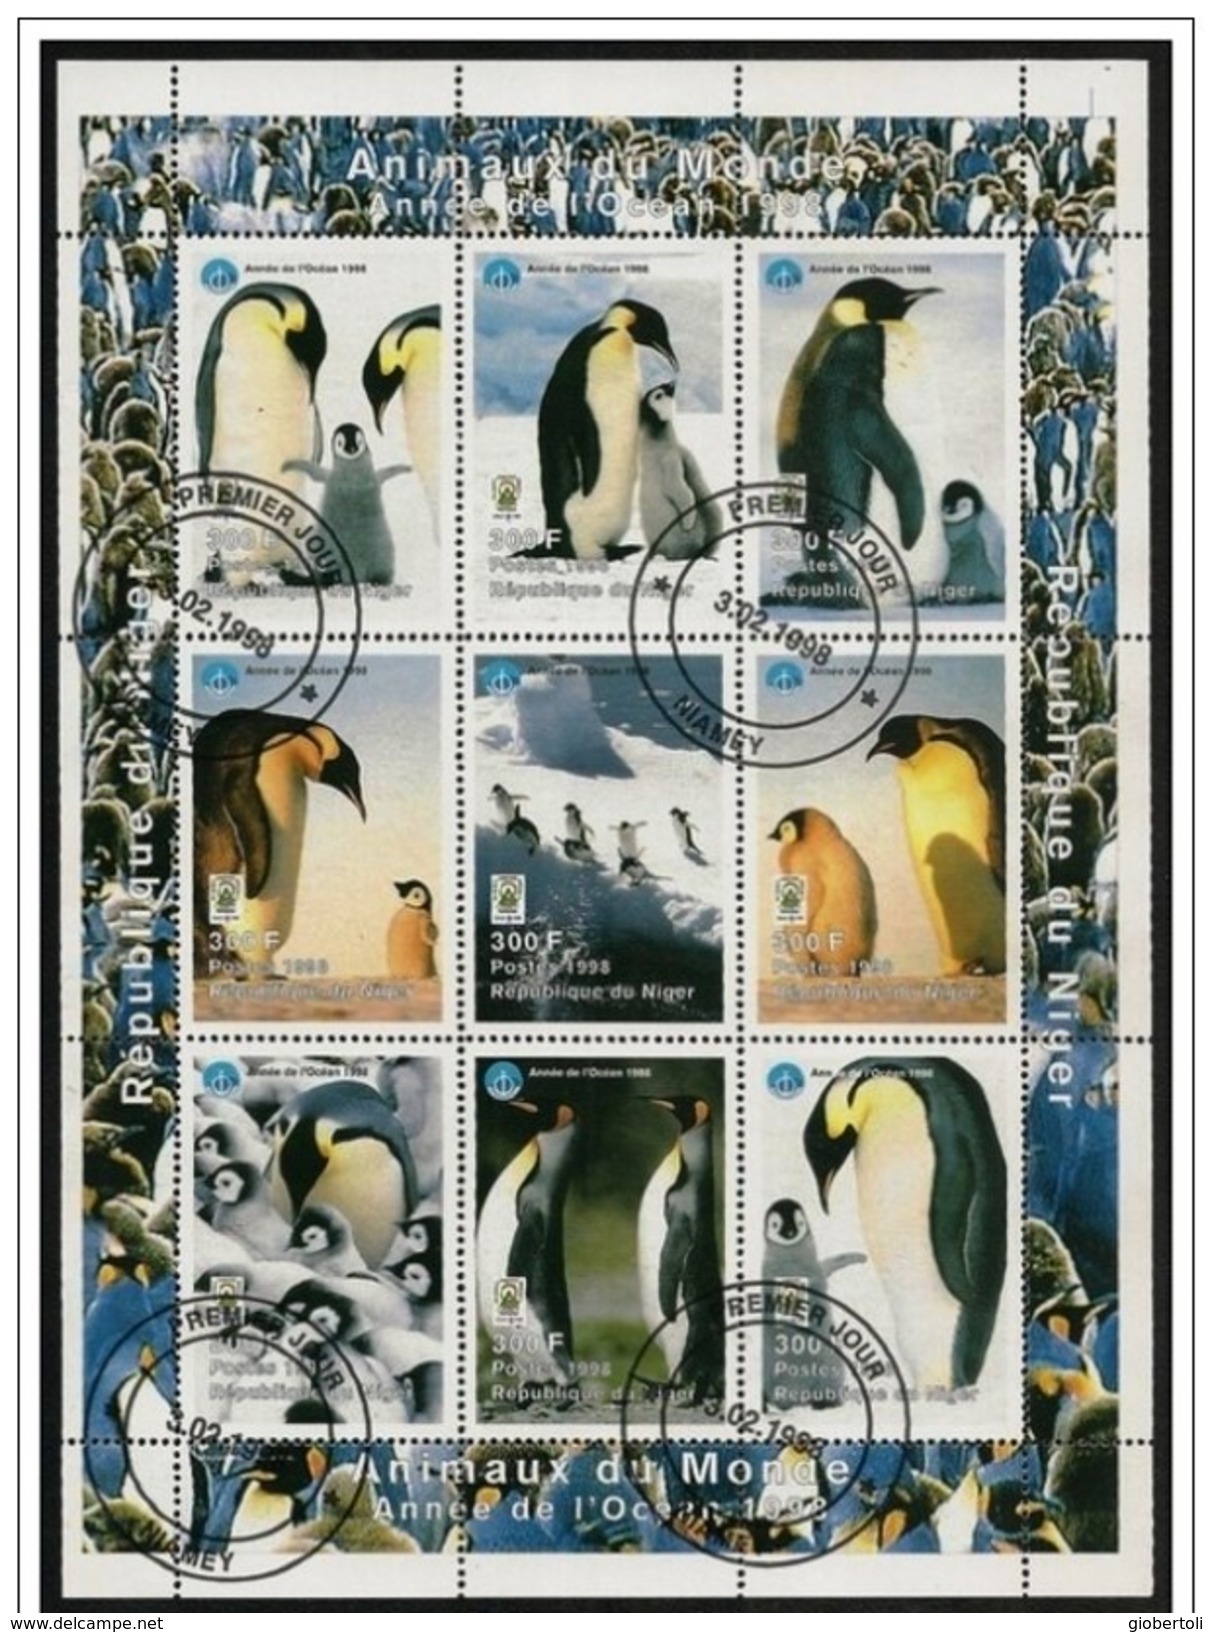 Niger: FDC, Foglietto, Block, Bloc, Pinguino Imperatore, Manchot Empereur, Emperor Penguin - Faune Antarctique